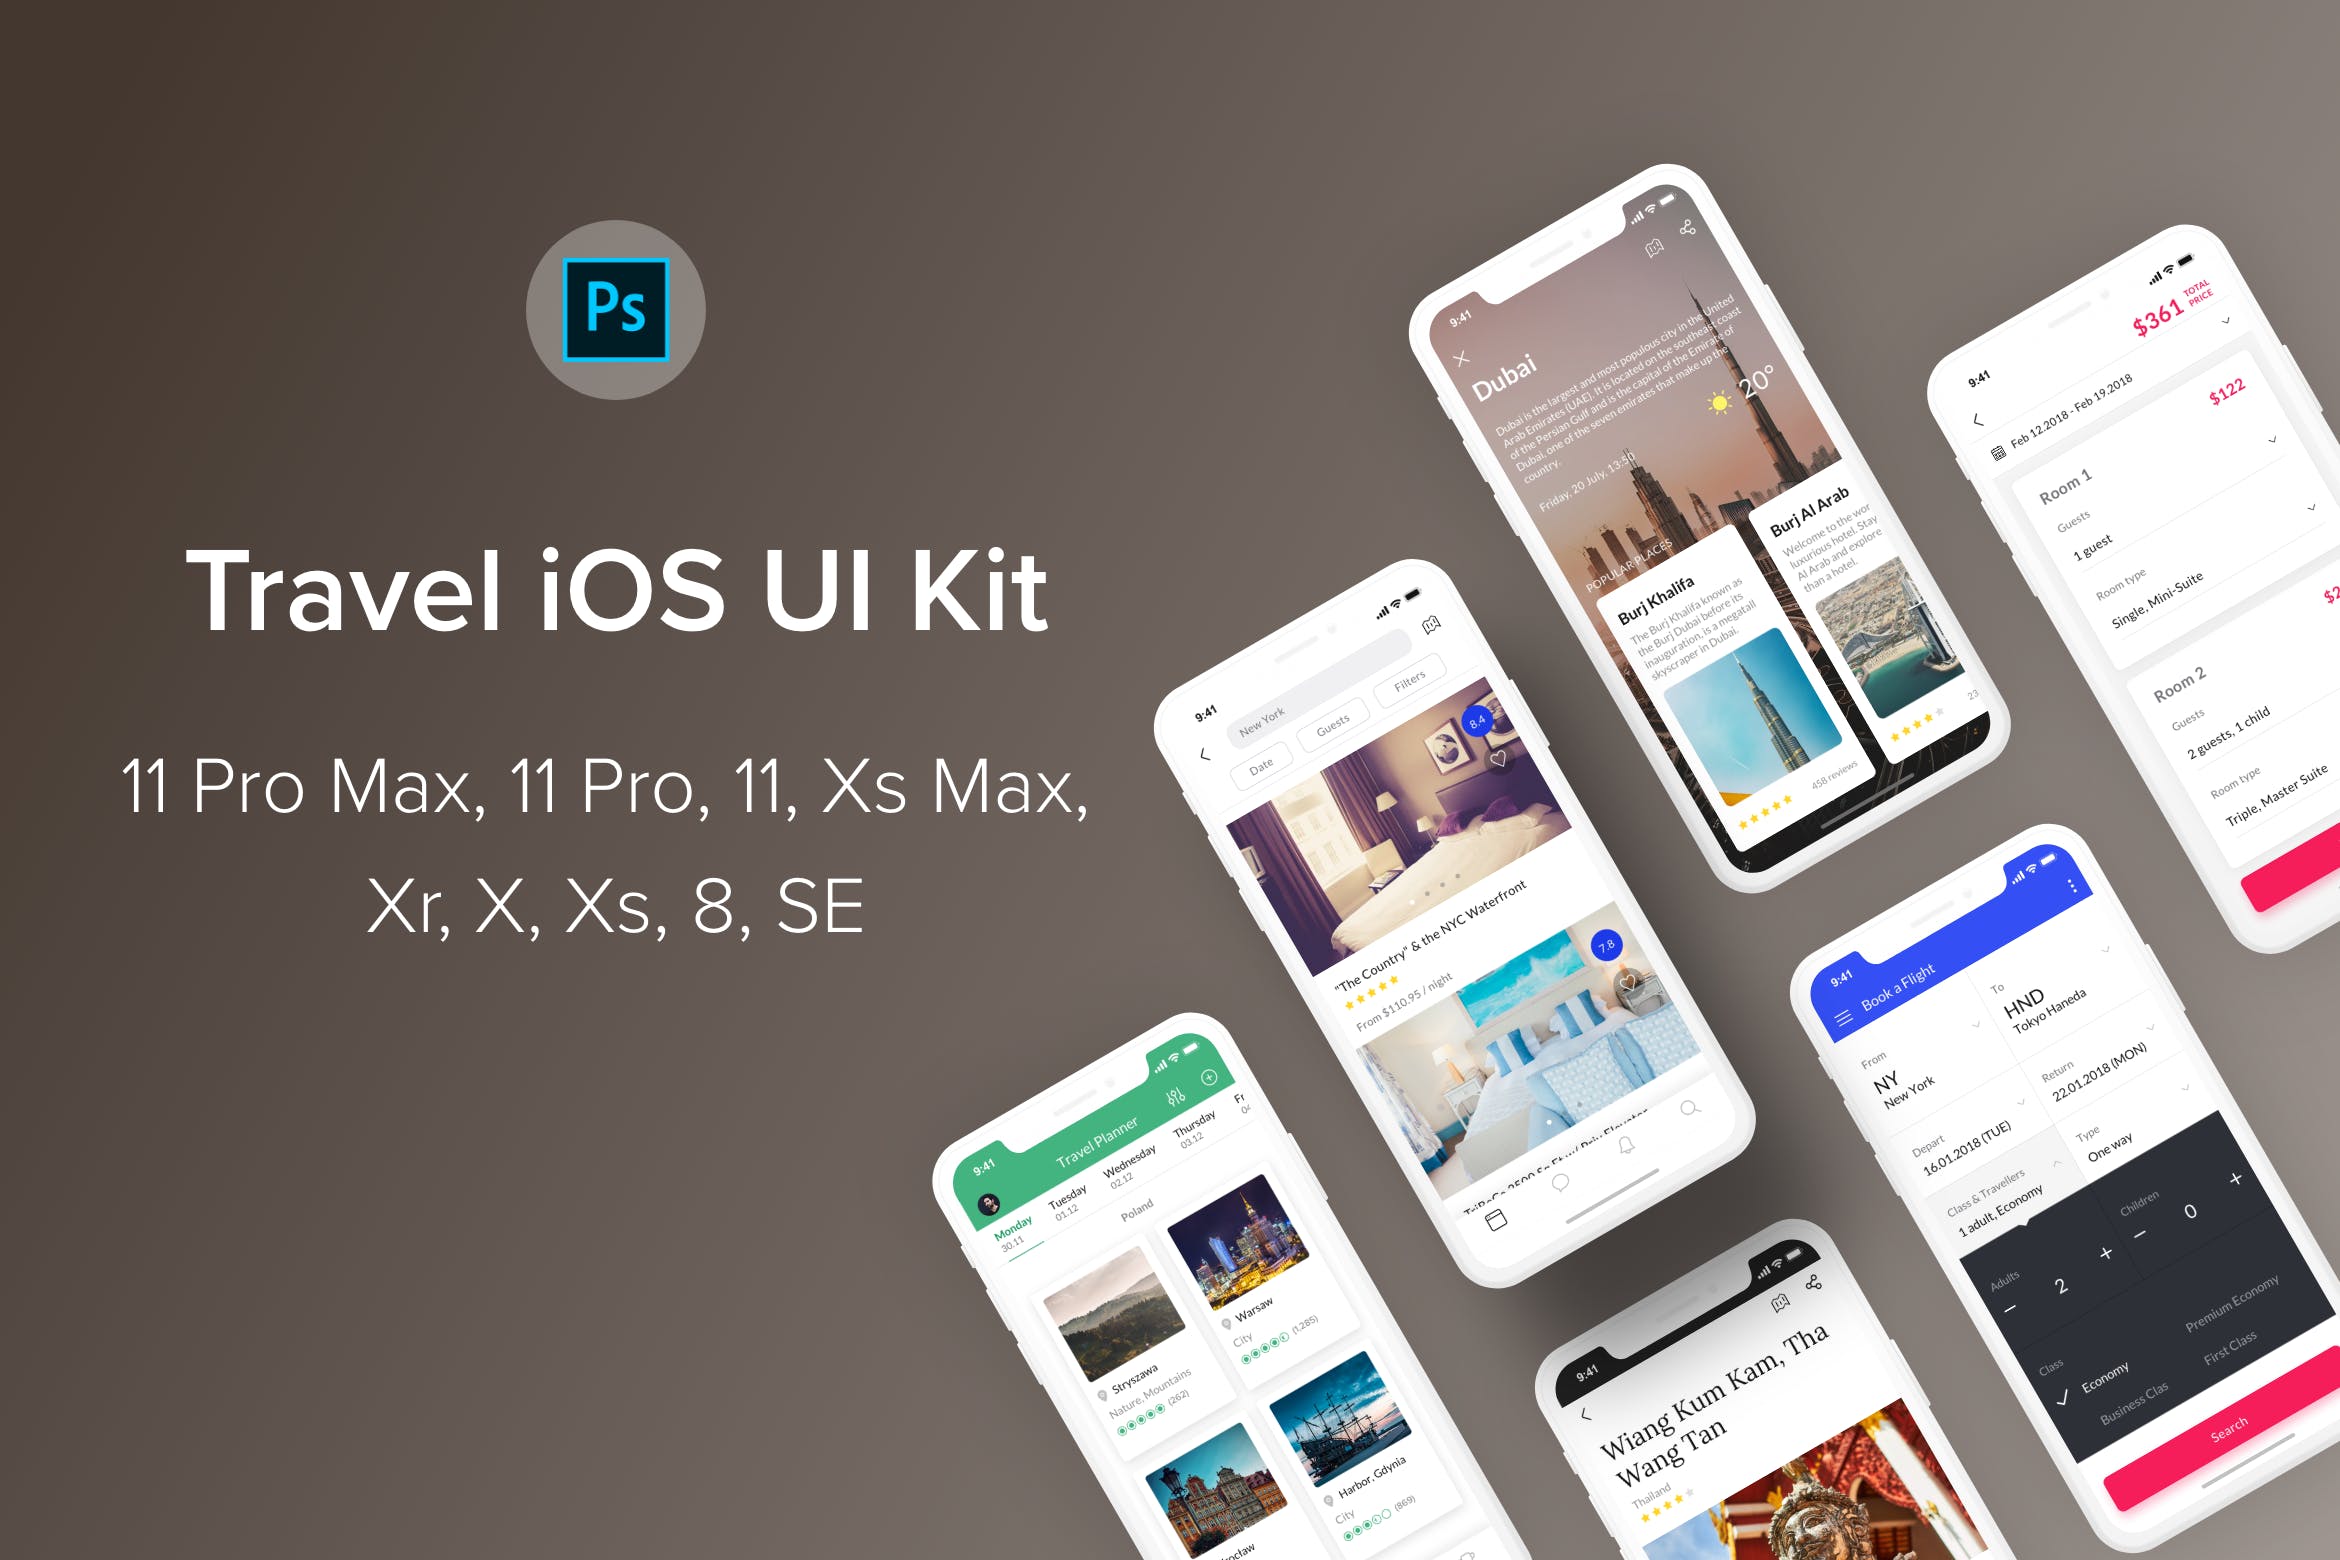 旅游主题iOS应用UI设计蚂蚁素材精选套件PSD模板 Travel iOS UI Kit (Photoshop)插图